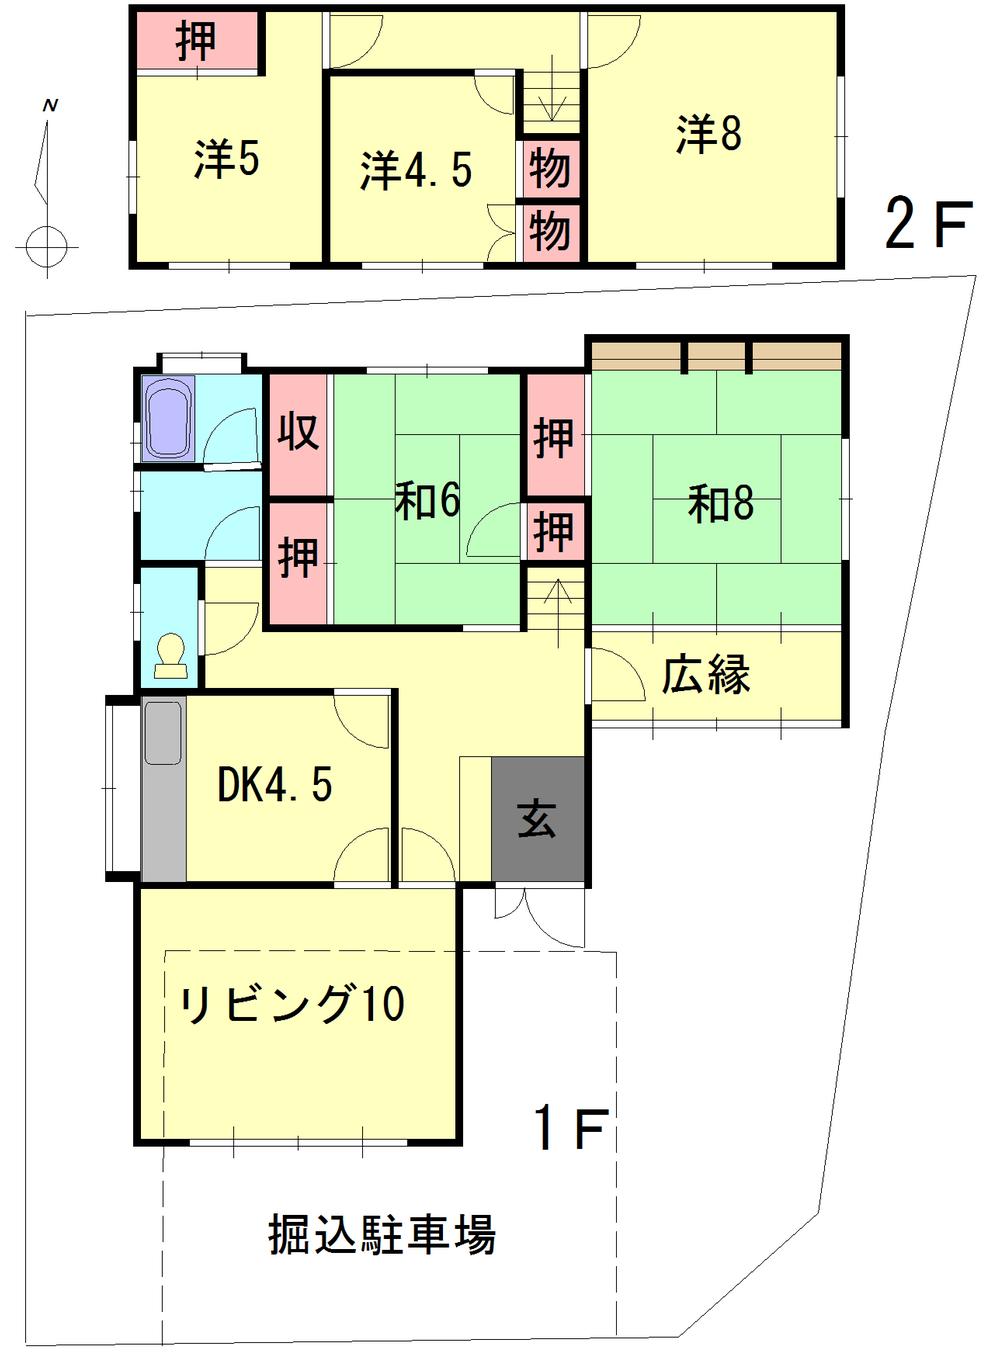 Floor plan. 16.8 million yen, 5LDK, Land area 295.72 sq m , Building area 118.15 sq m